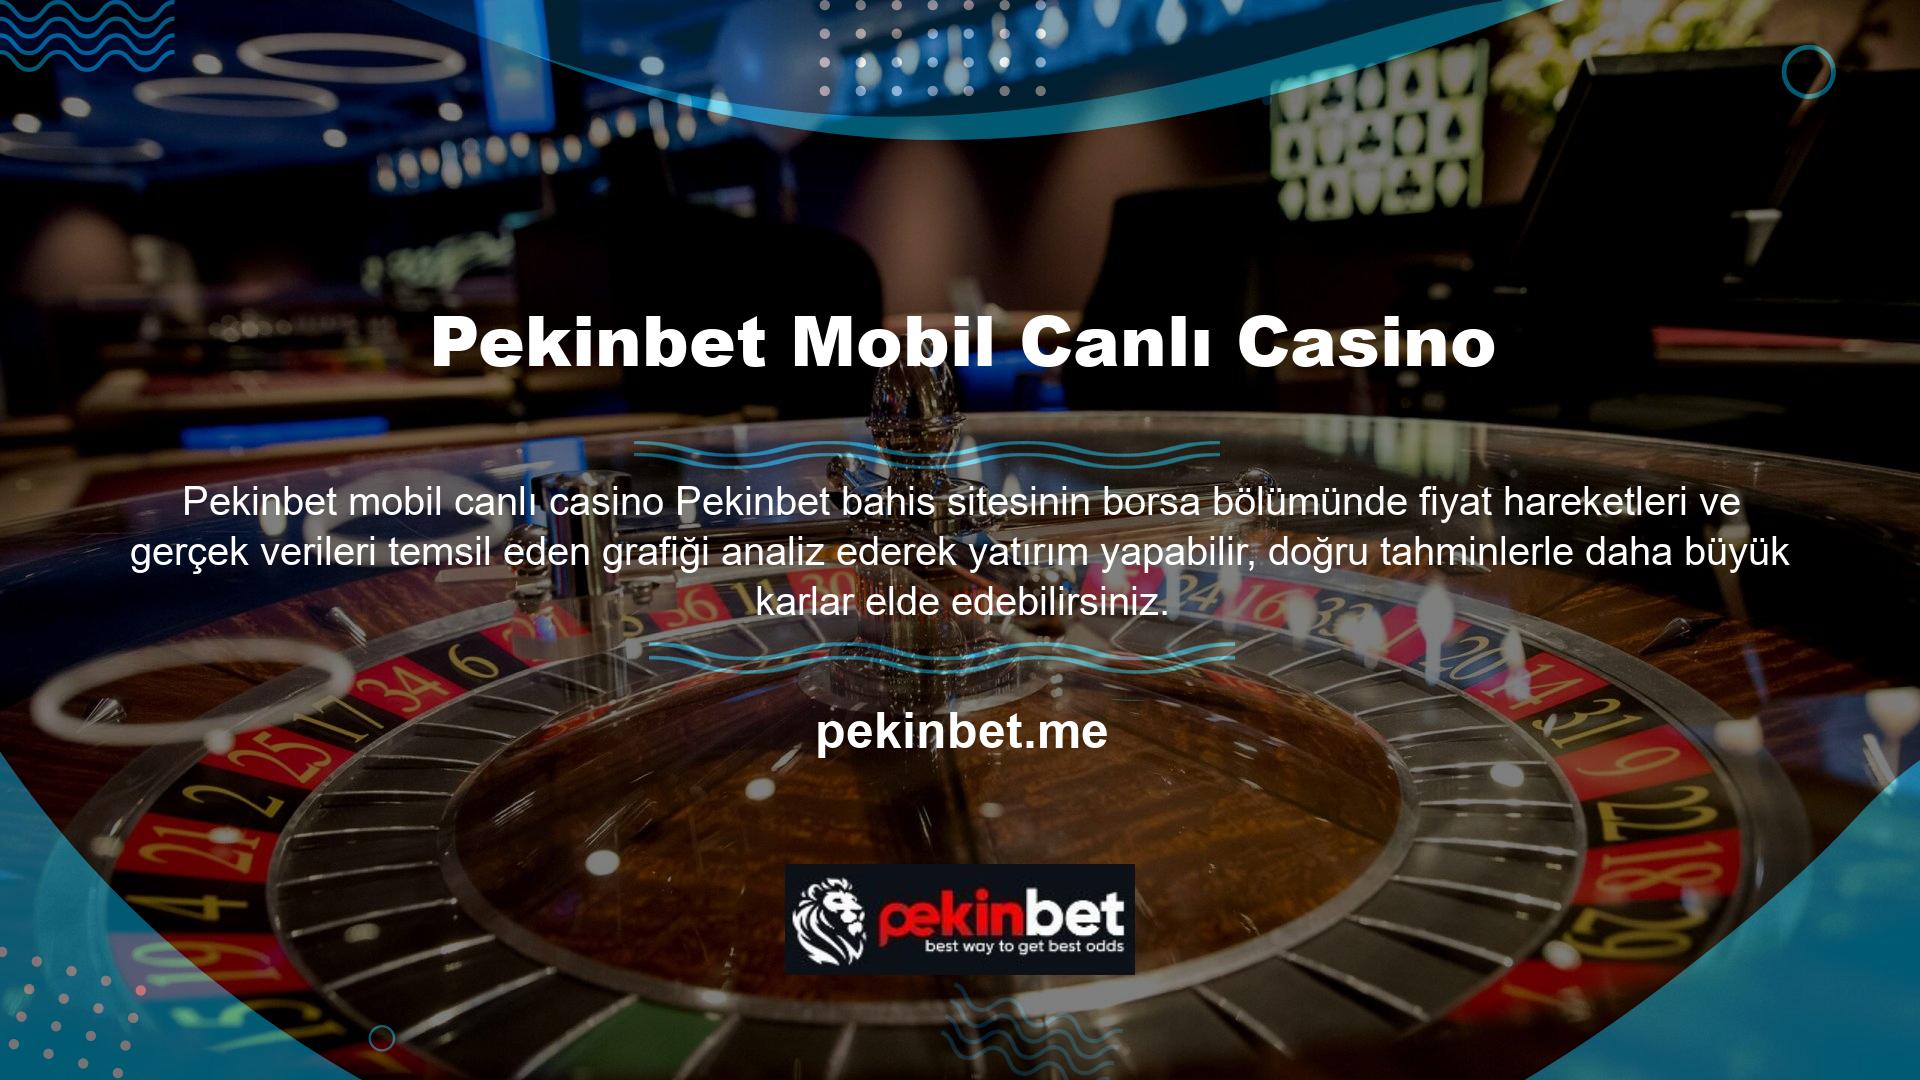 Pekinbet mobile'daki canlı casino sanal bahis özelliği, gerçek parayla bahis oynamanıza ve anında sonuç almanıza olanak tanır